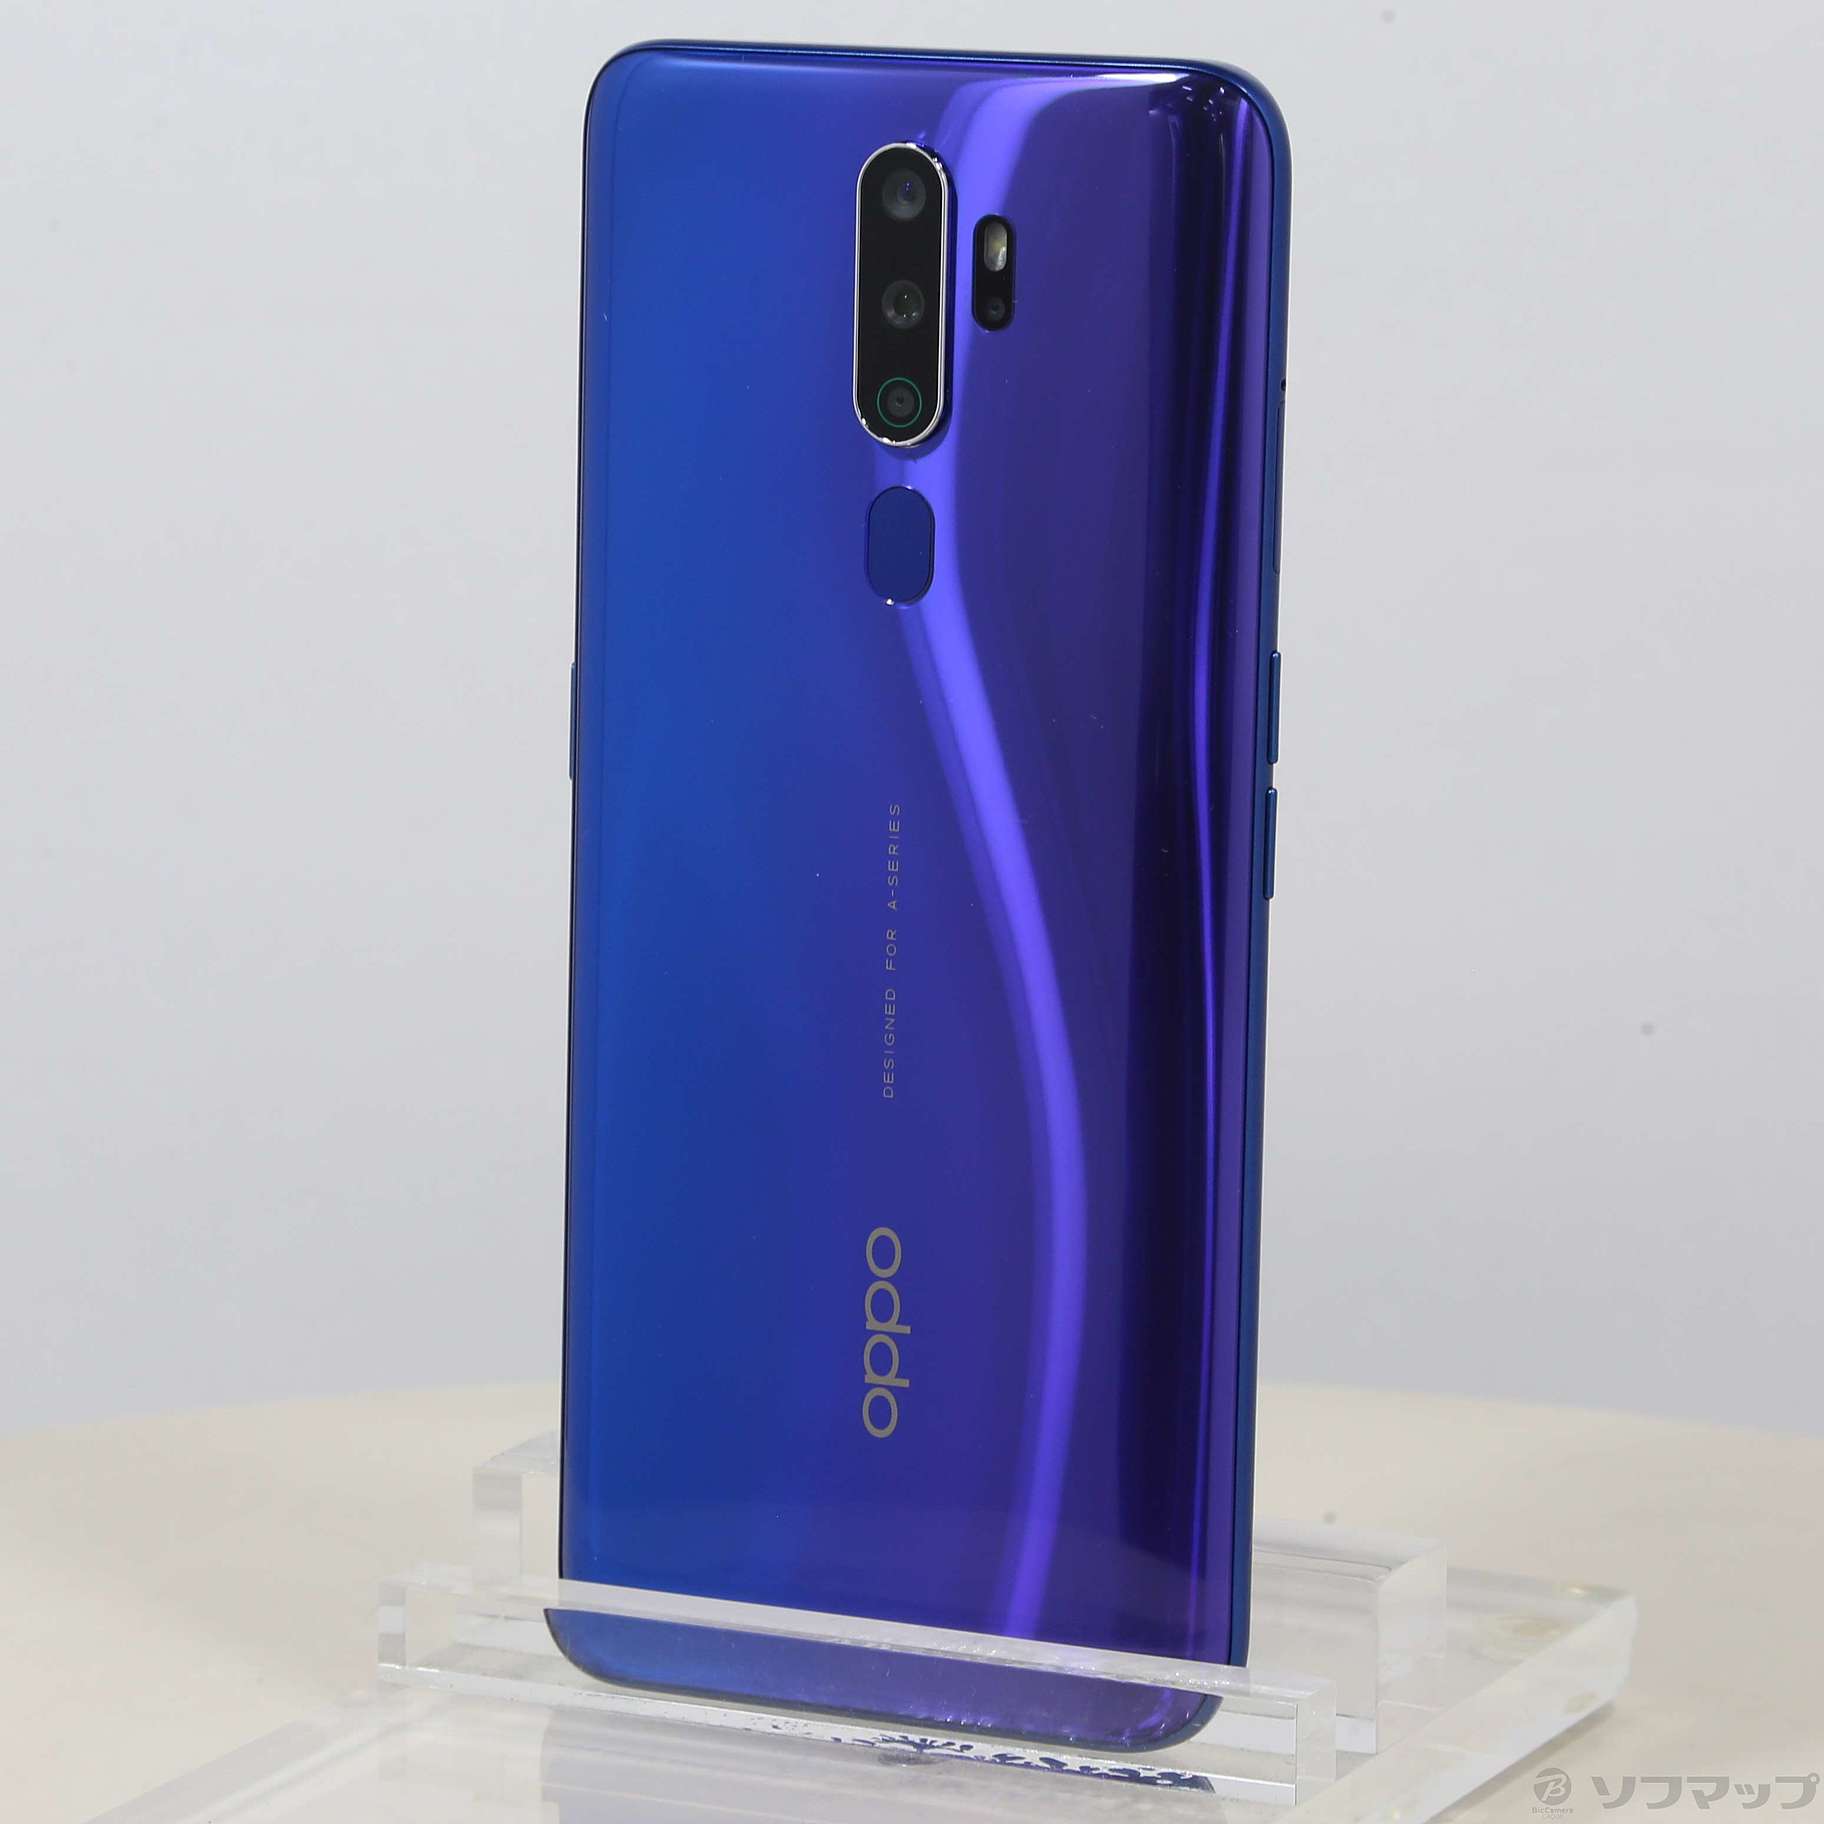 OPPO オッポ A5 2020 64GB ブルー CPH1943BL SIMフ - スマートフォン本体